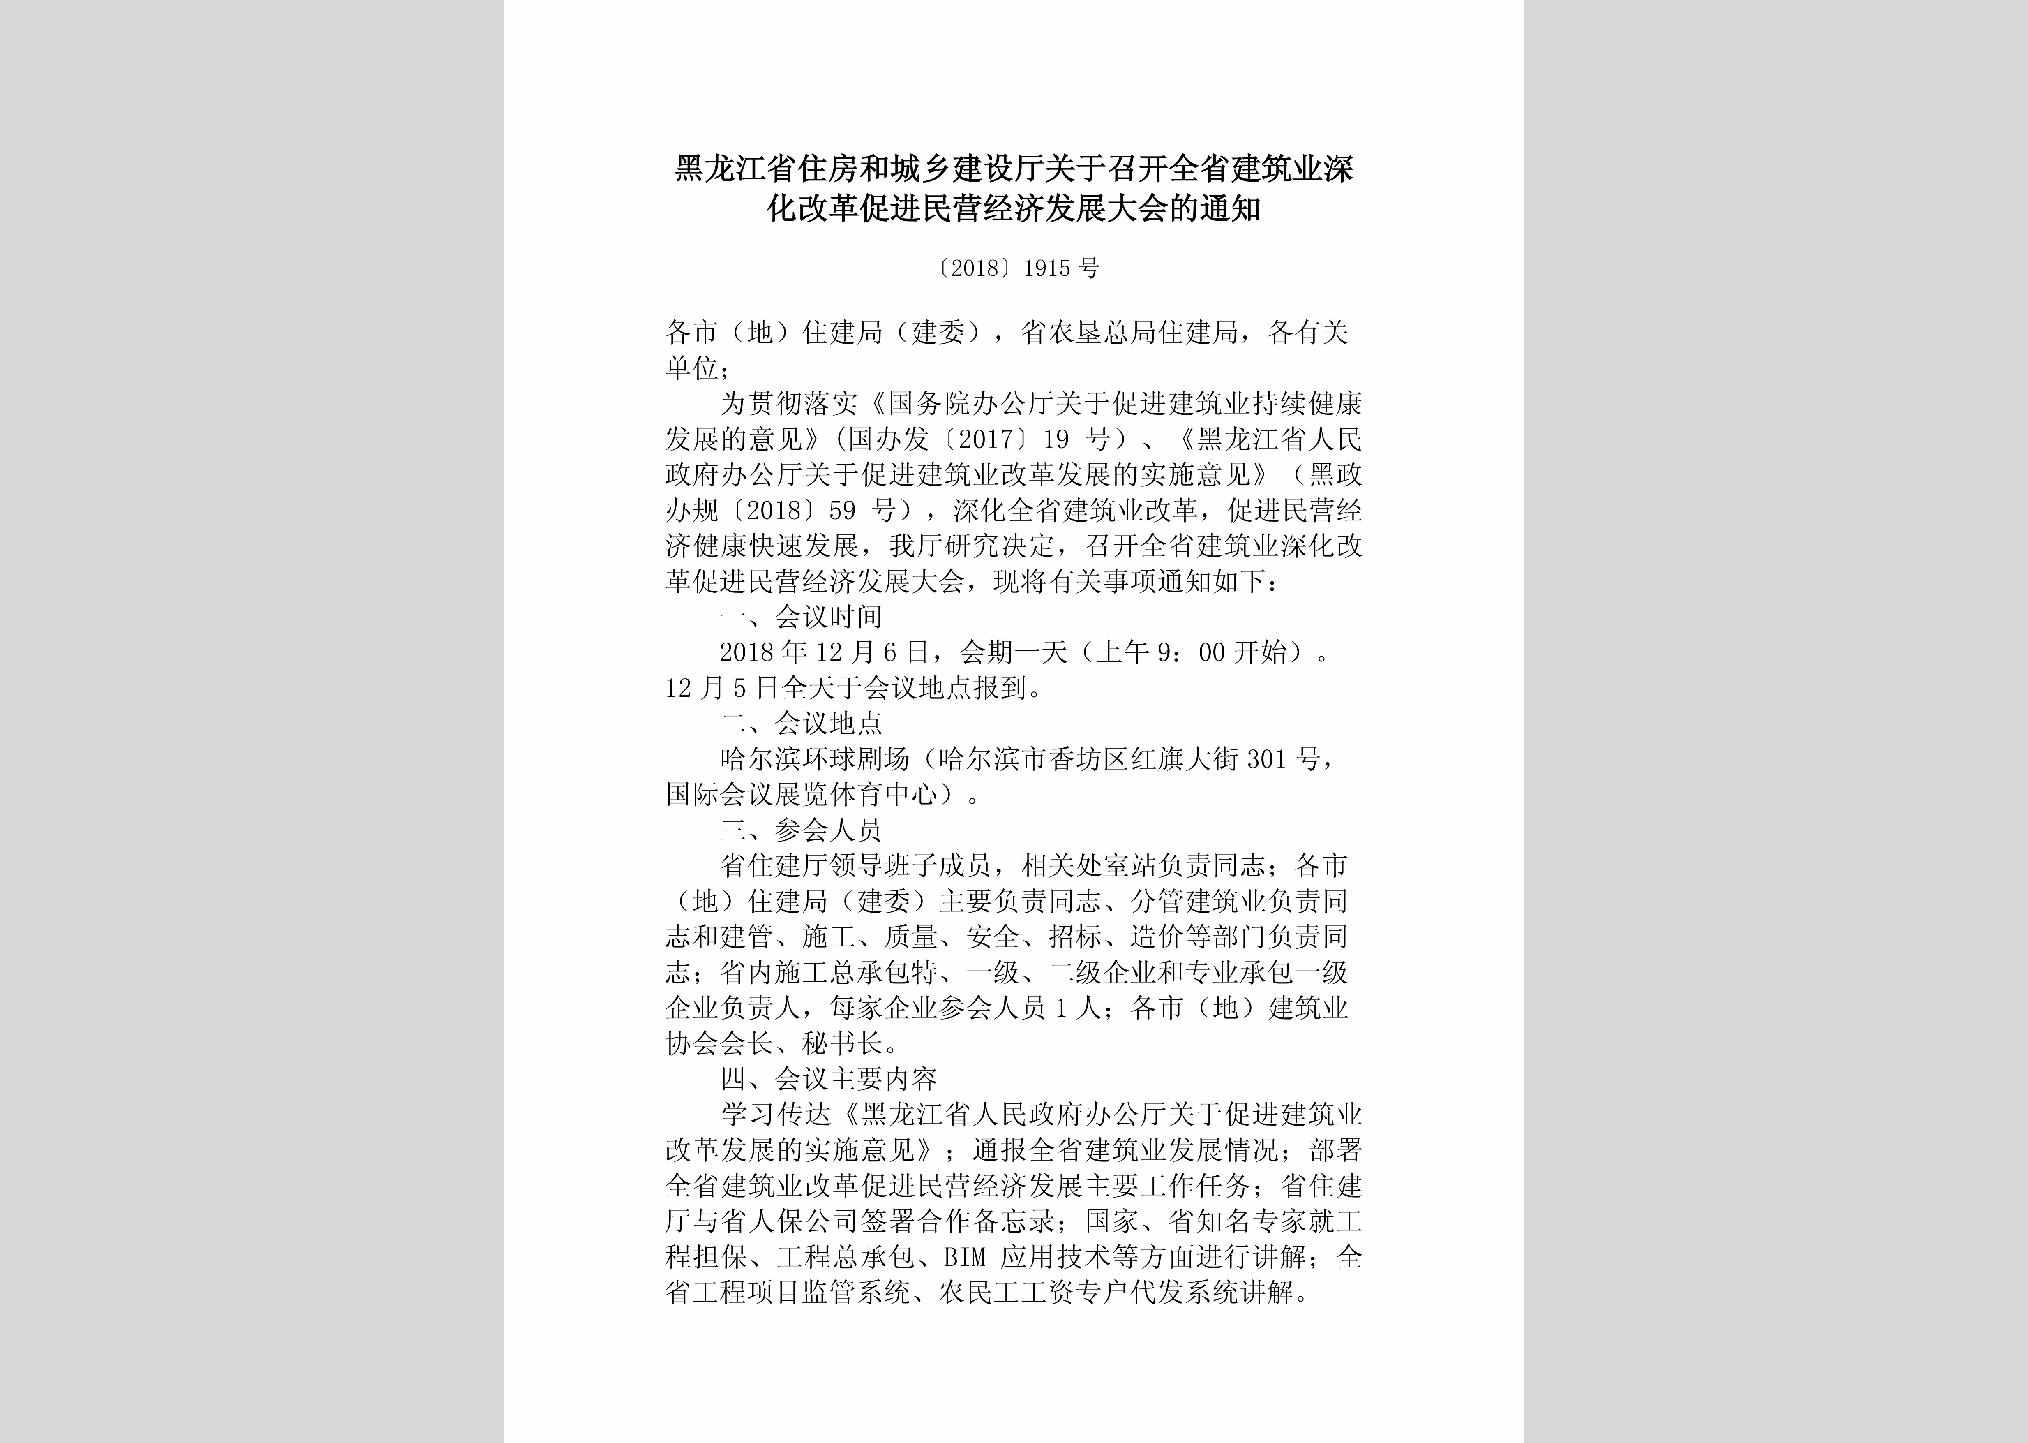 [2018]1915号：黑龙江省住房和城乡建设厅关于召开全省建筑业深化改革促进民营经济发展大会的通知